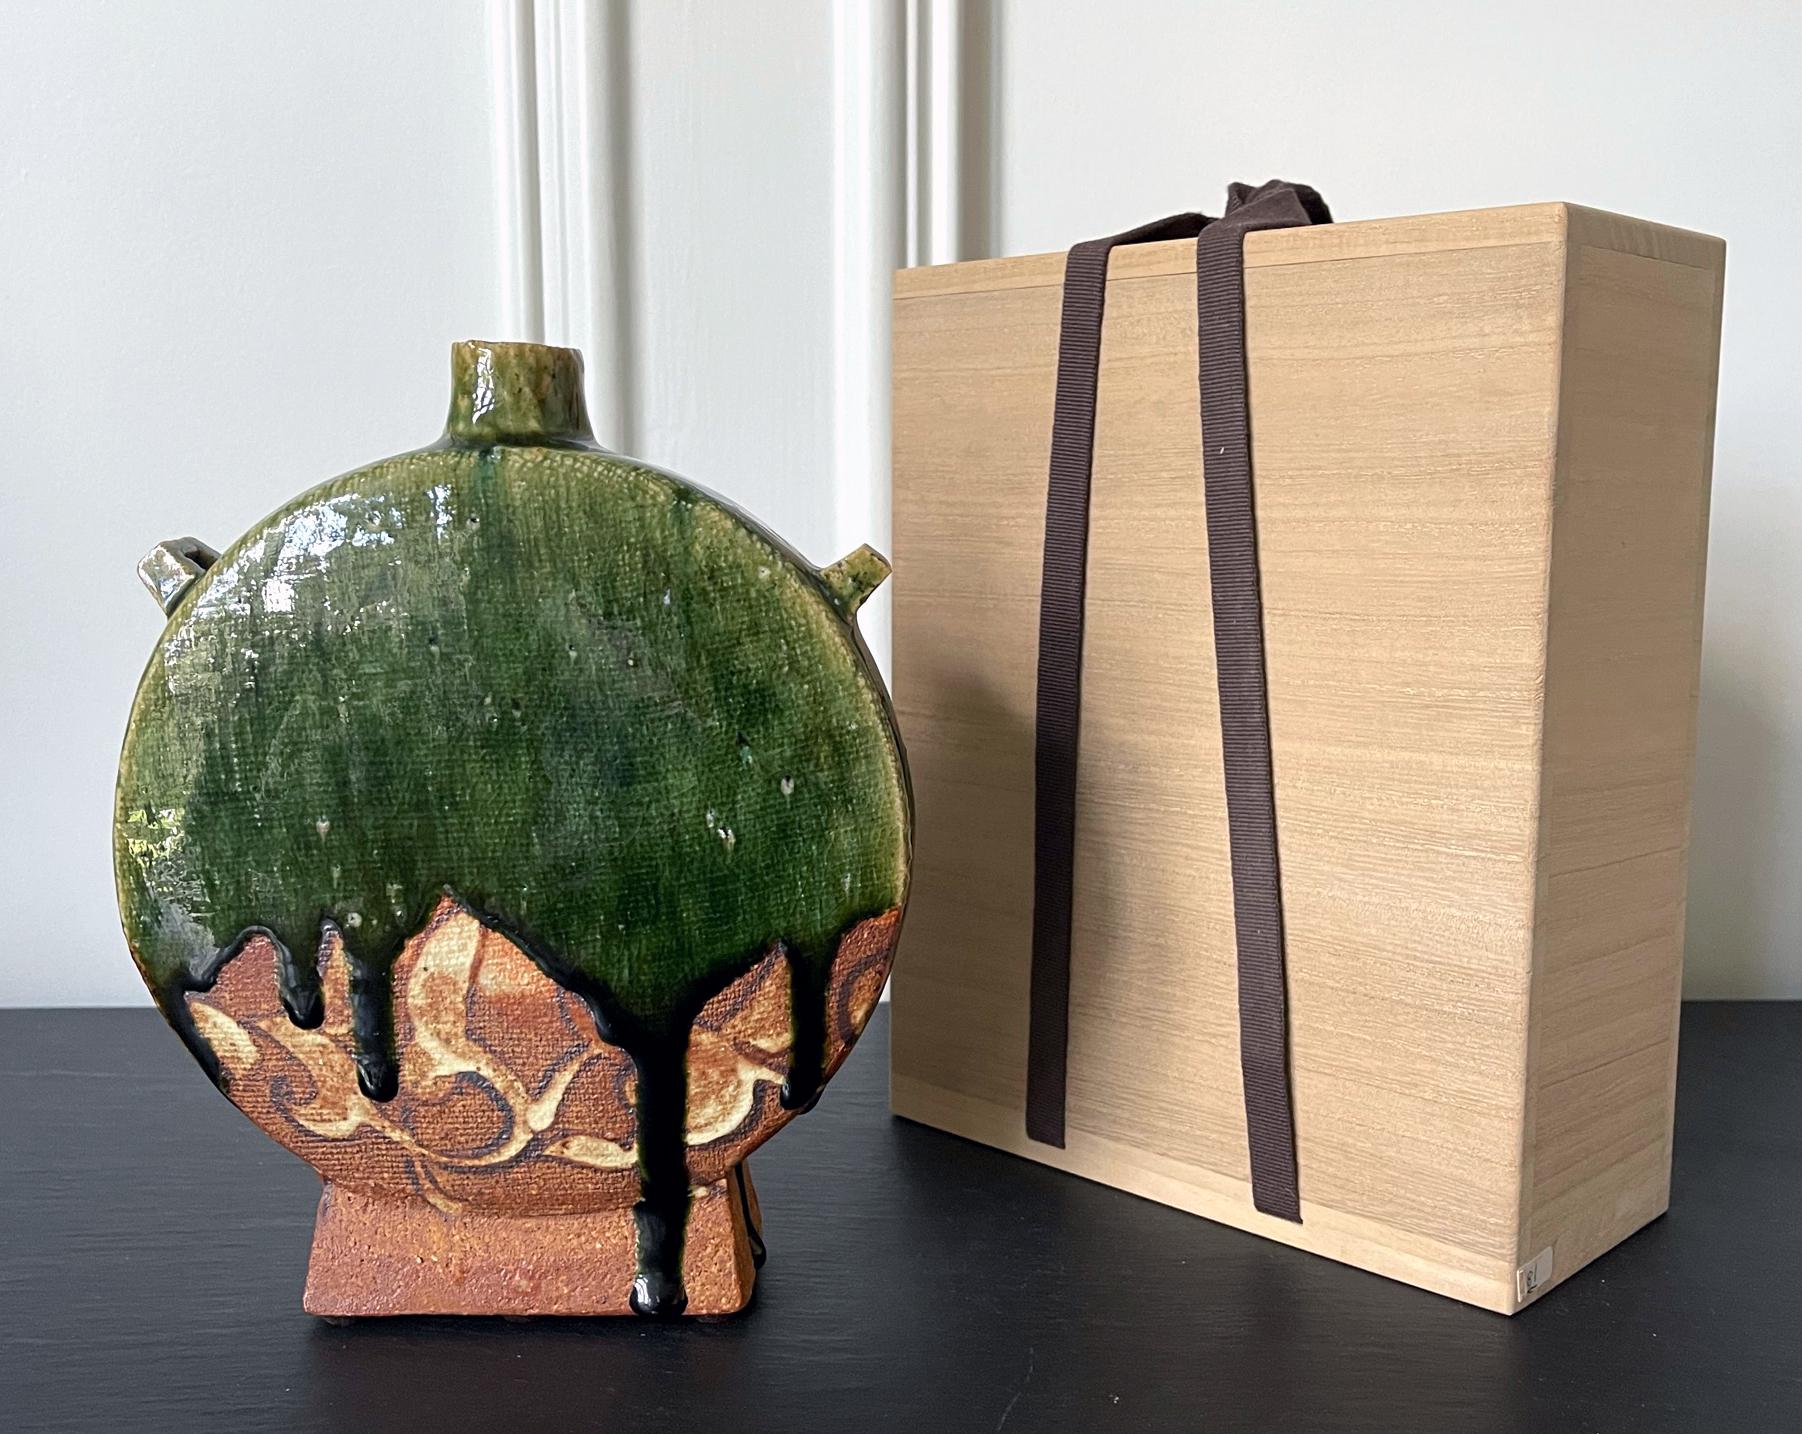 Un vase contemporain en céramique réalisé par le potier japonais Ken Matsuzaki (1950-). Le vase présente une forme distinguée de 